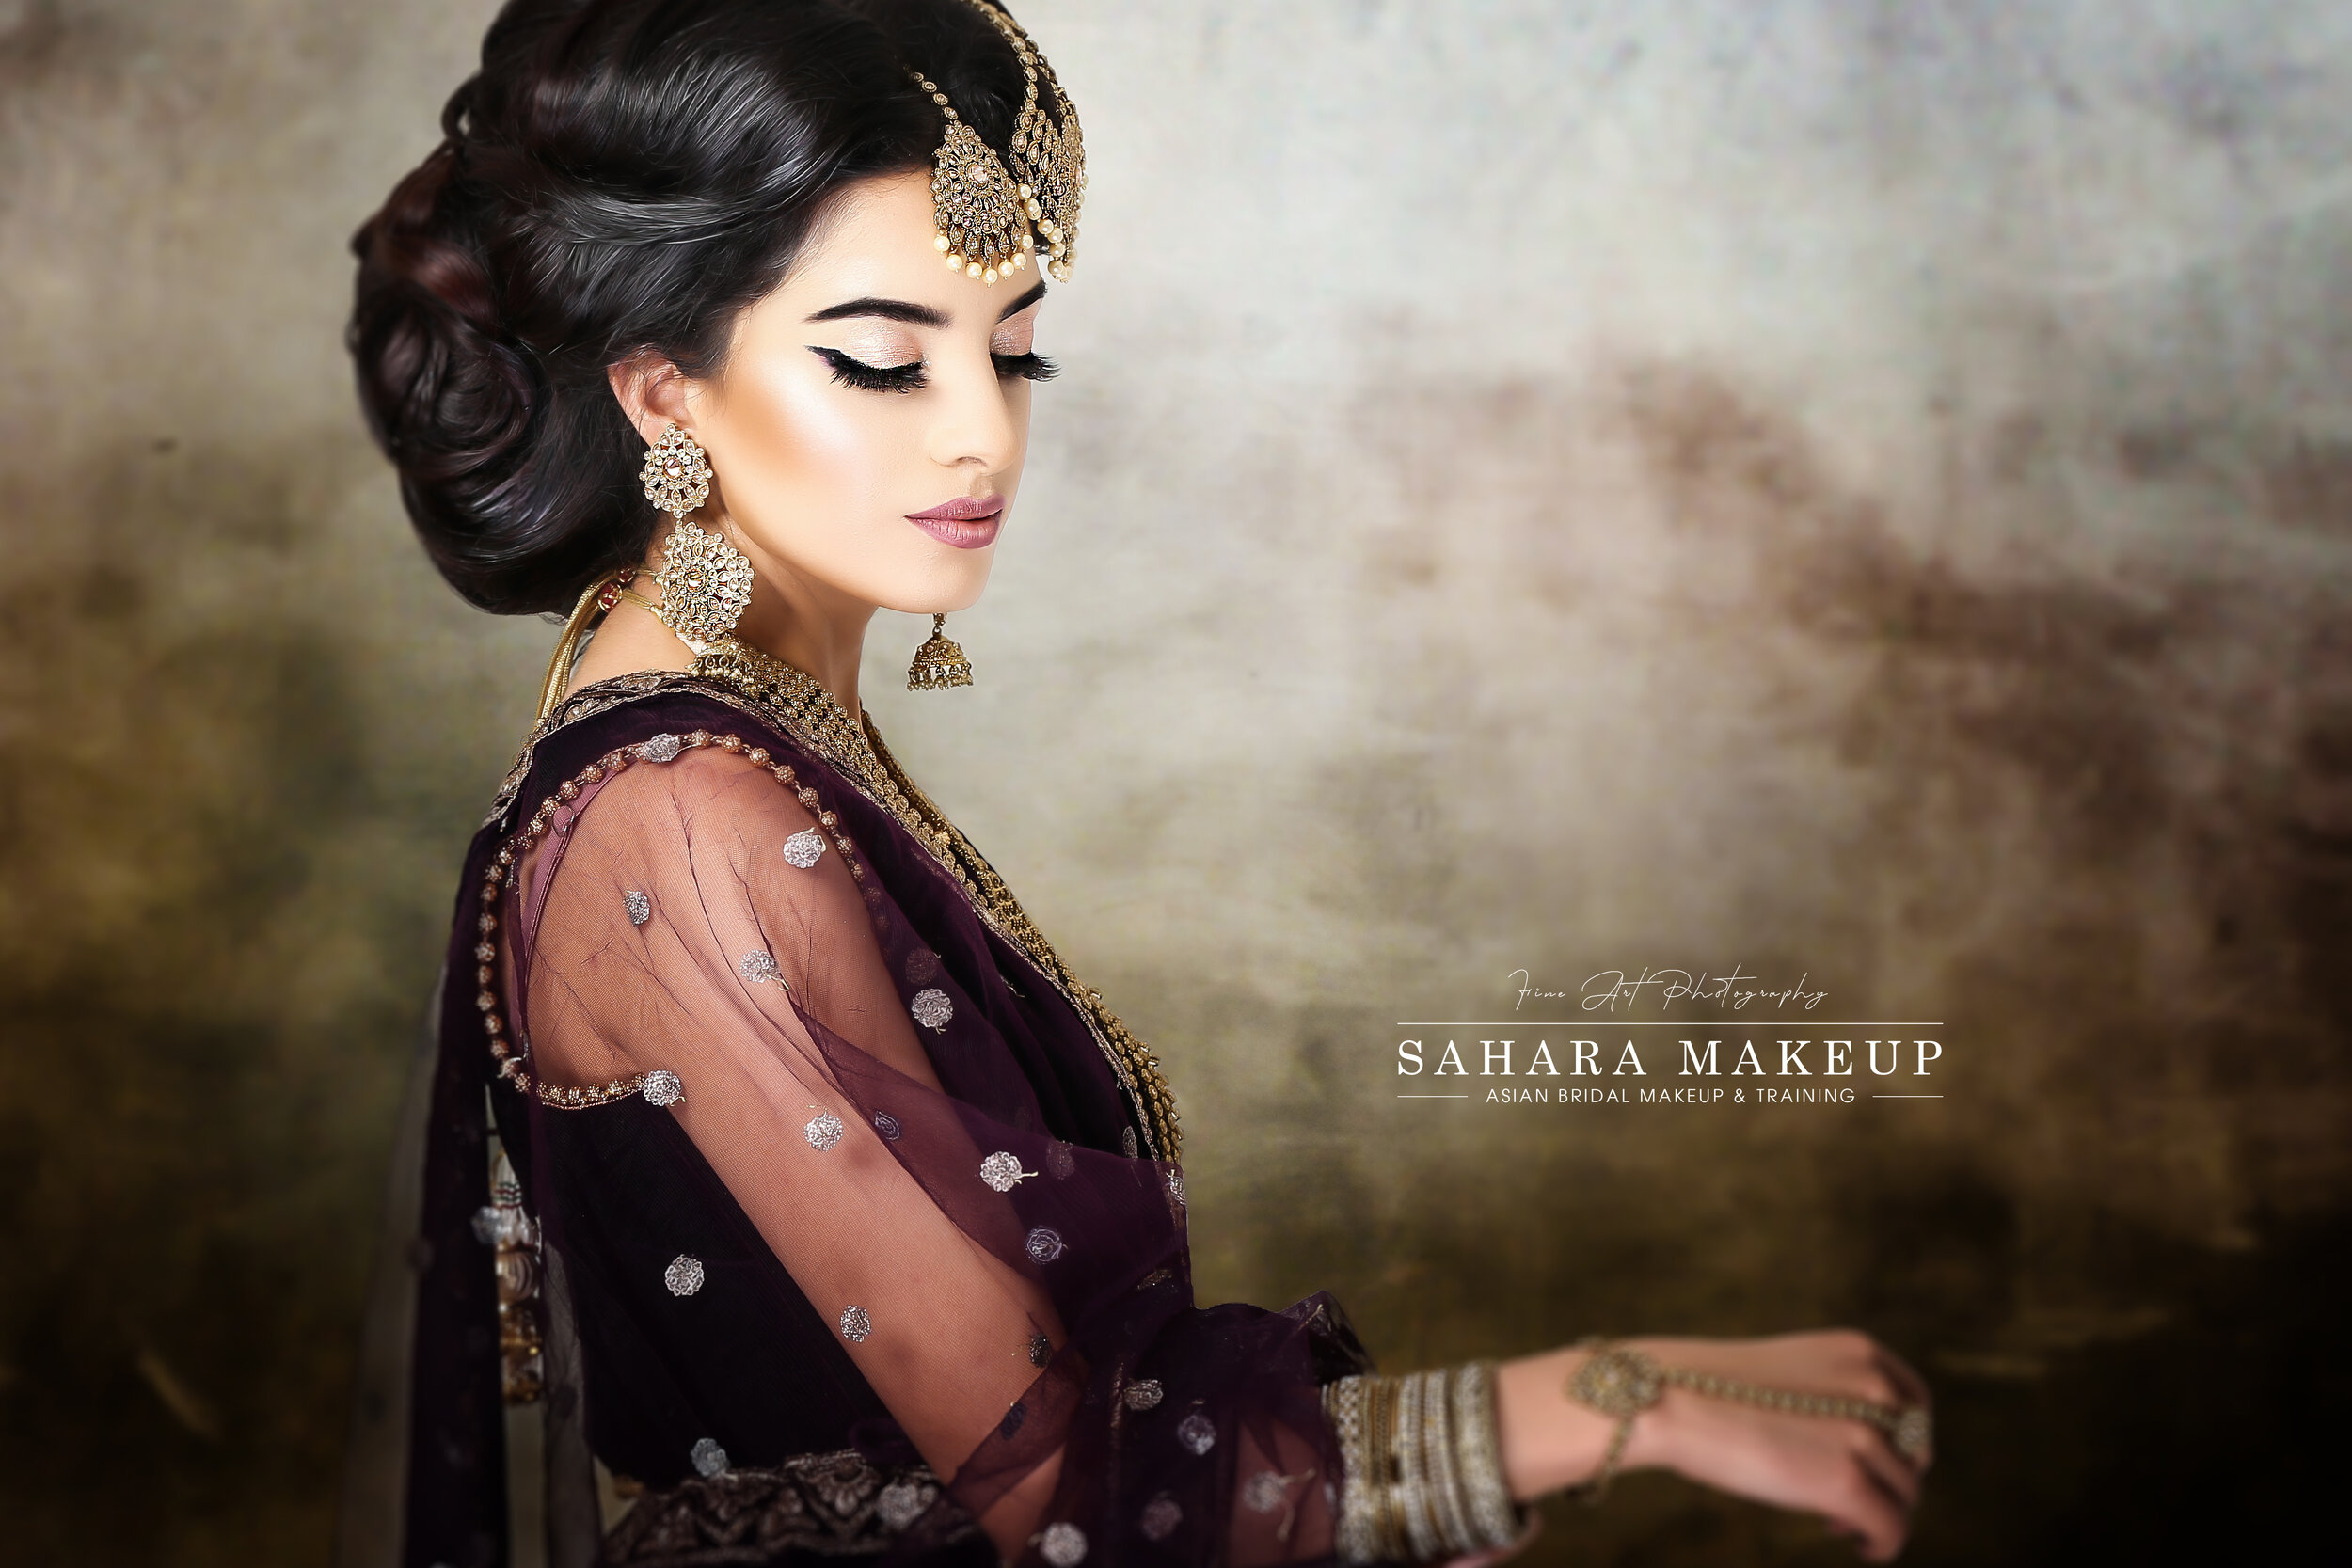 Sahara Makeup | Asian Bridal Hair & Makeup | Training Academy